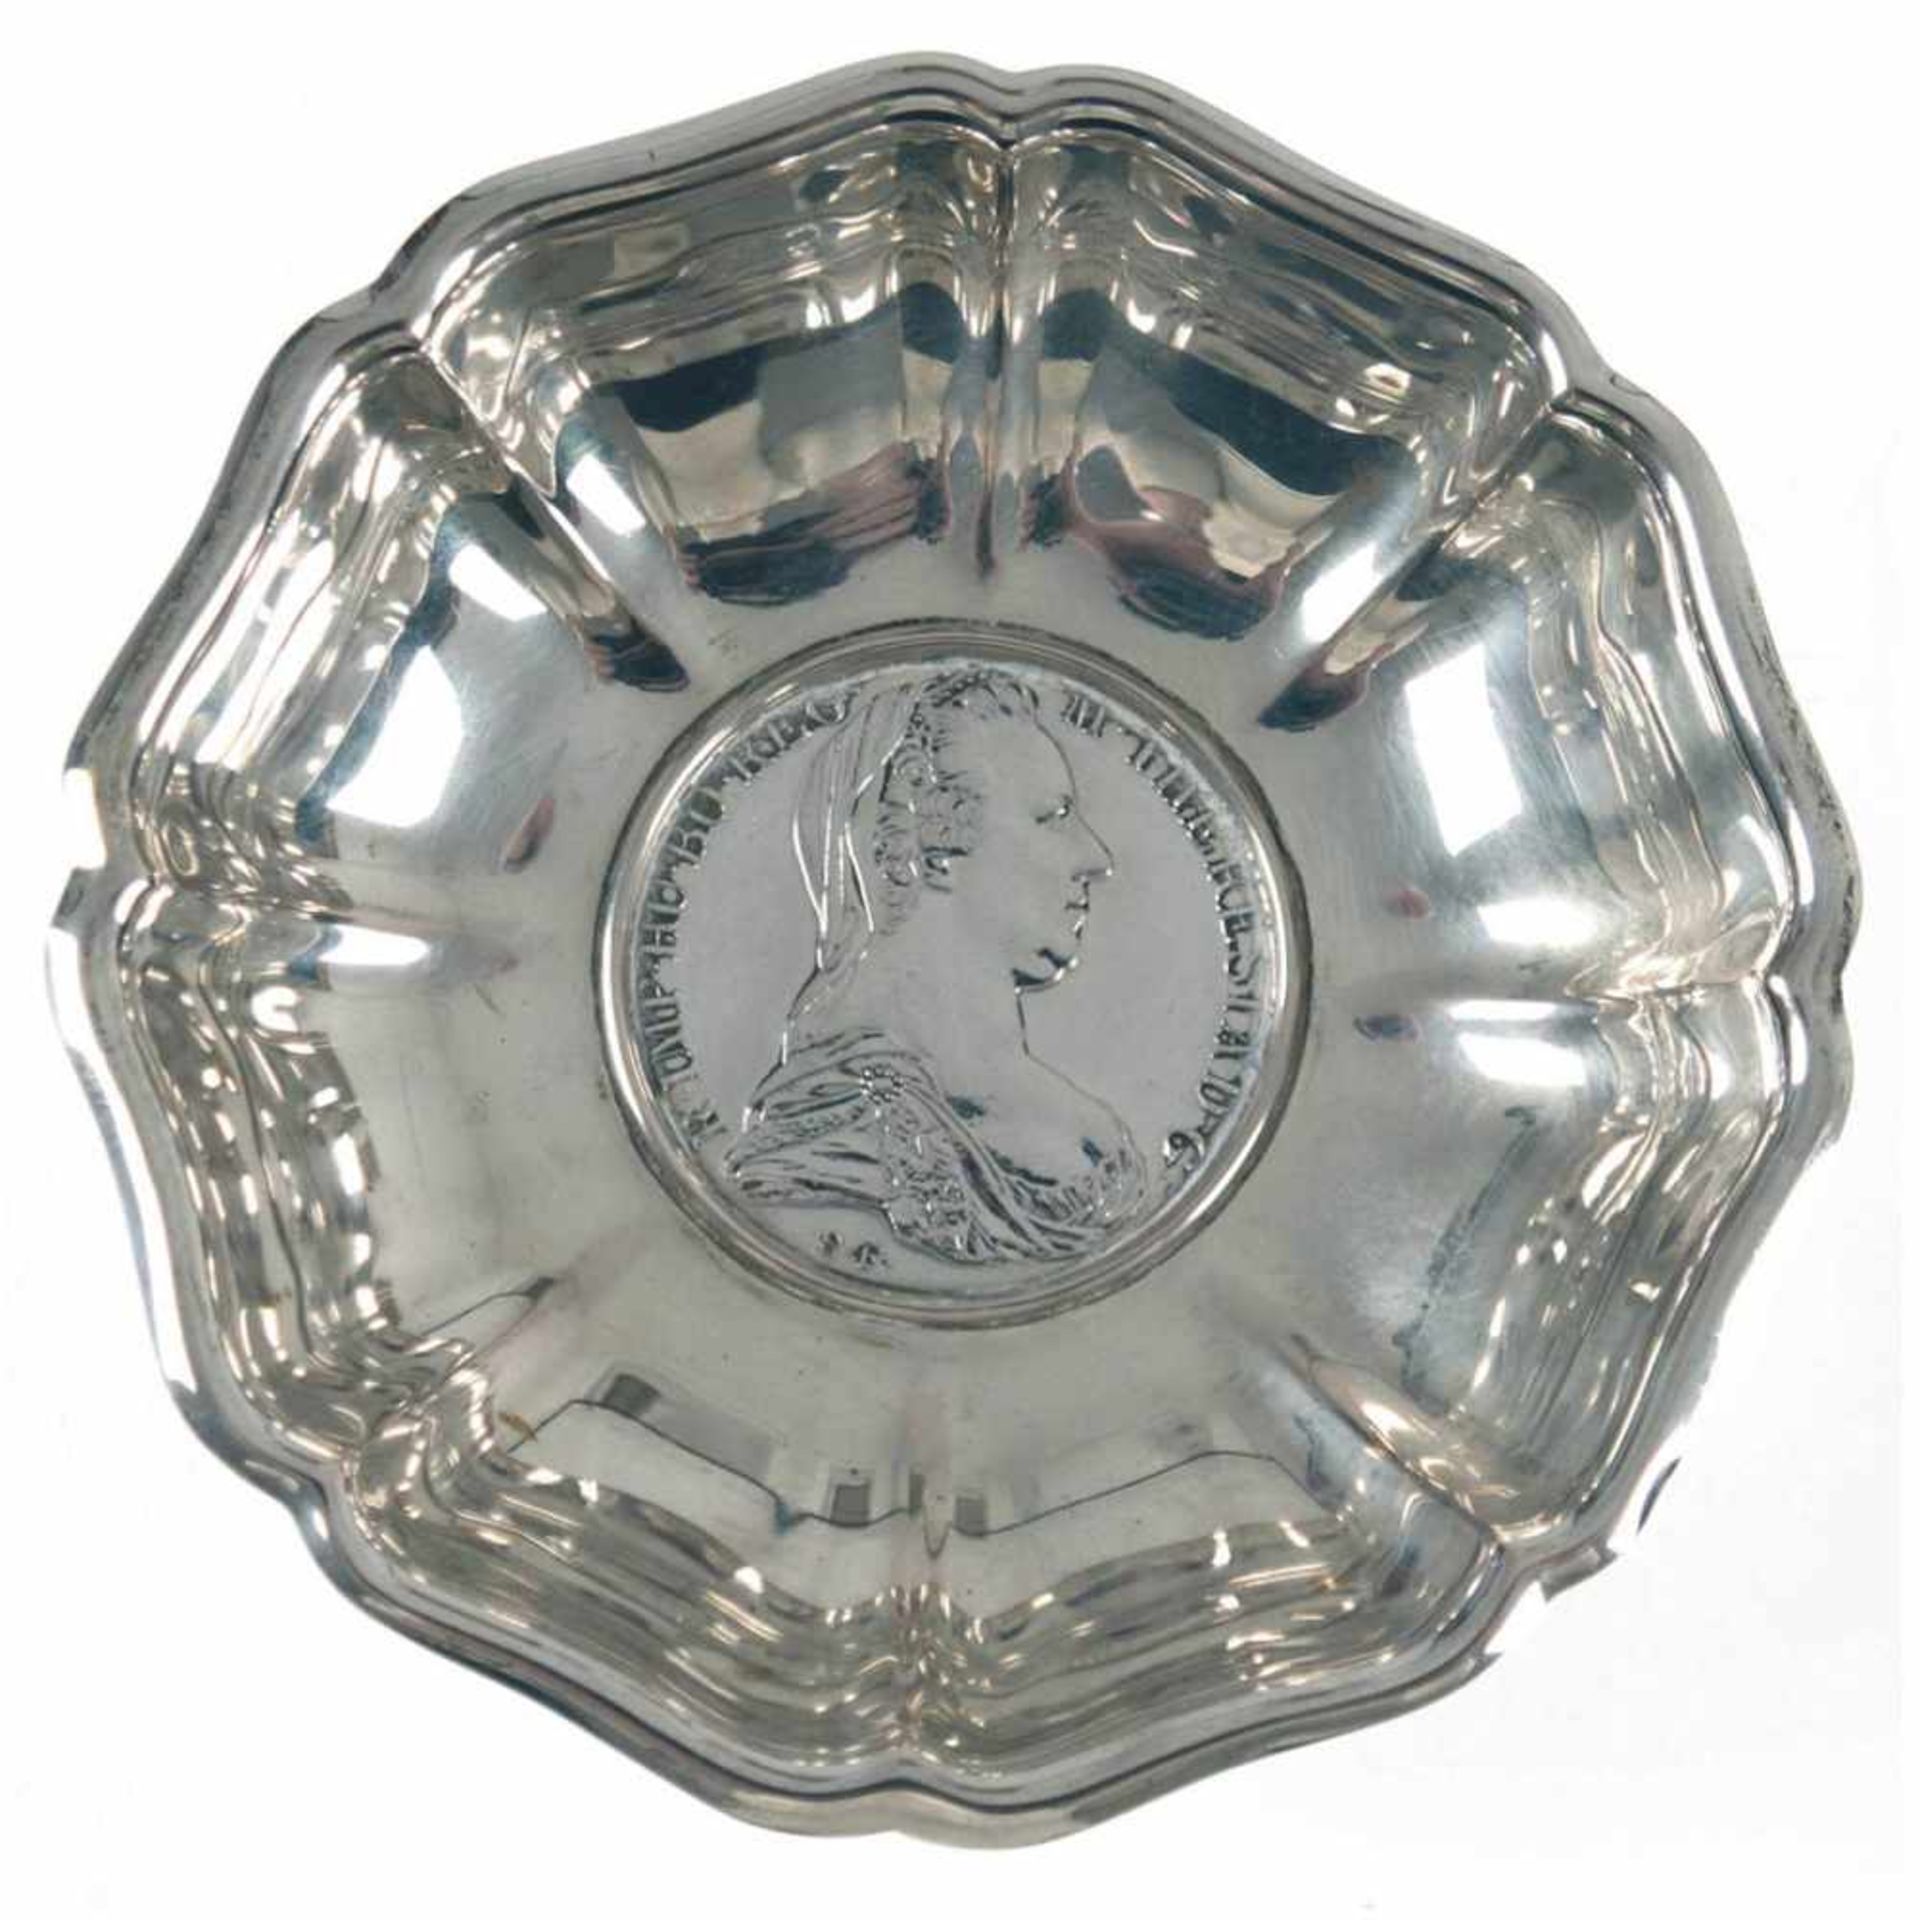 Münzschälchen, Silber, punziert, ca. 70 g, runde geschweifte Form, im Spiegel eingesetzteMünze, H.